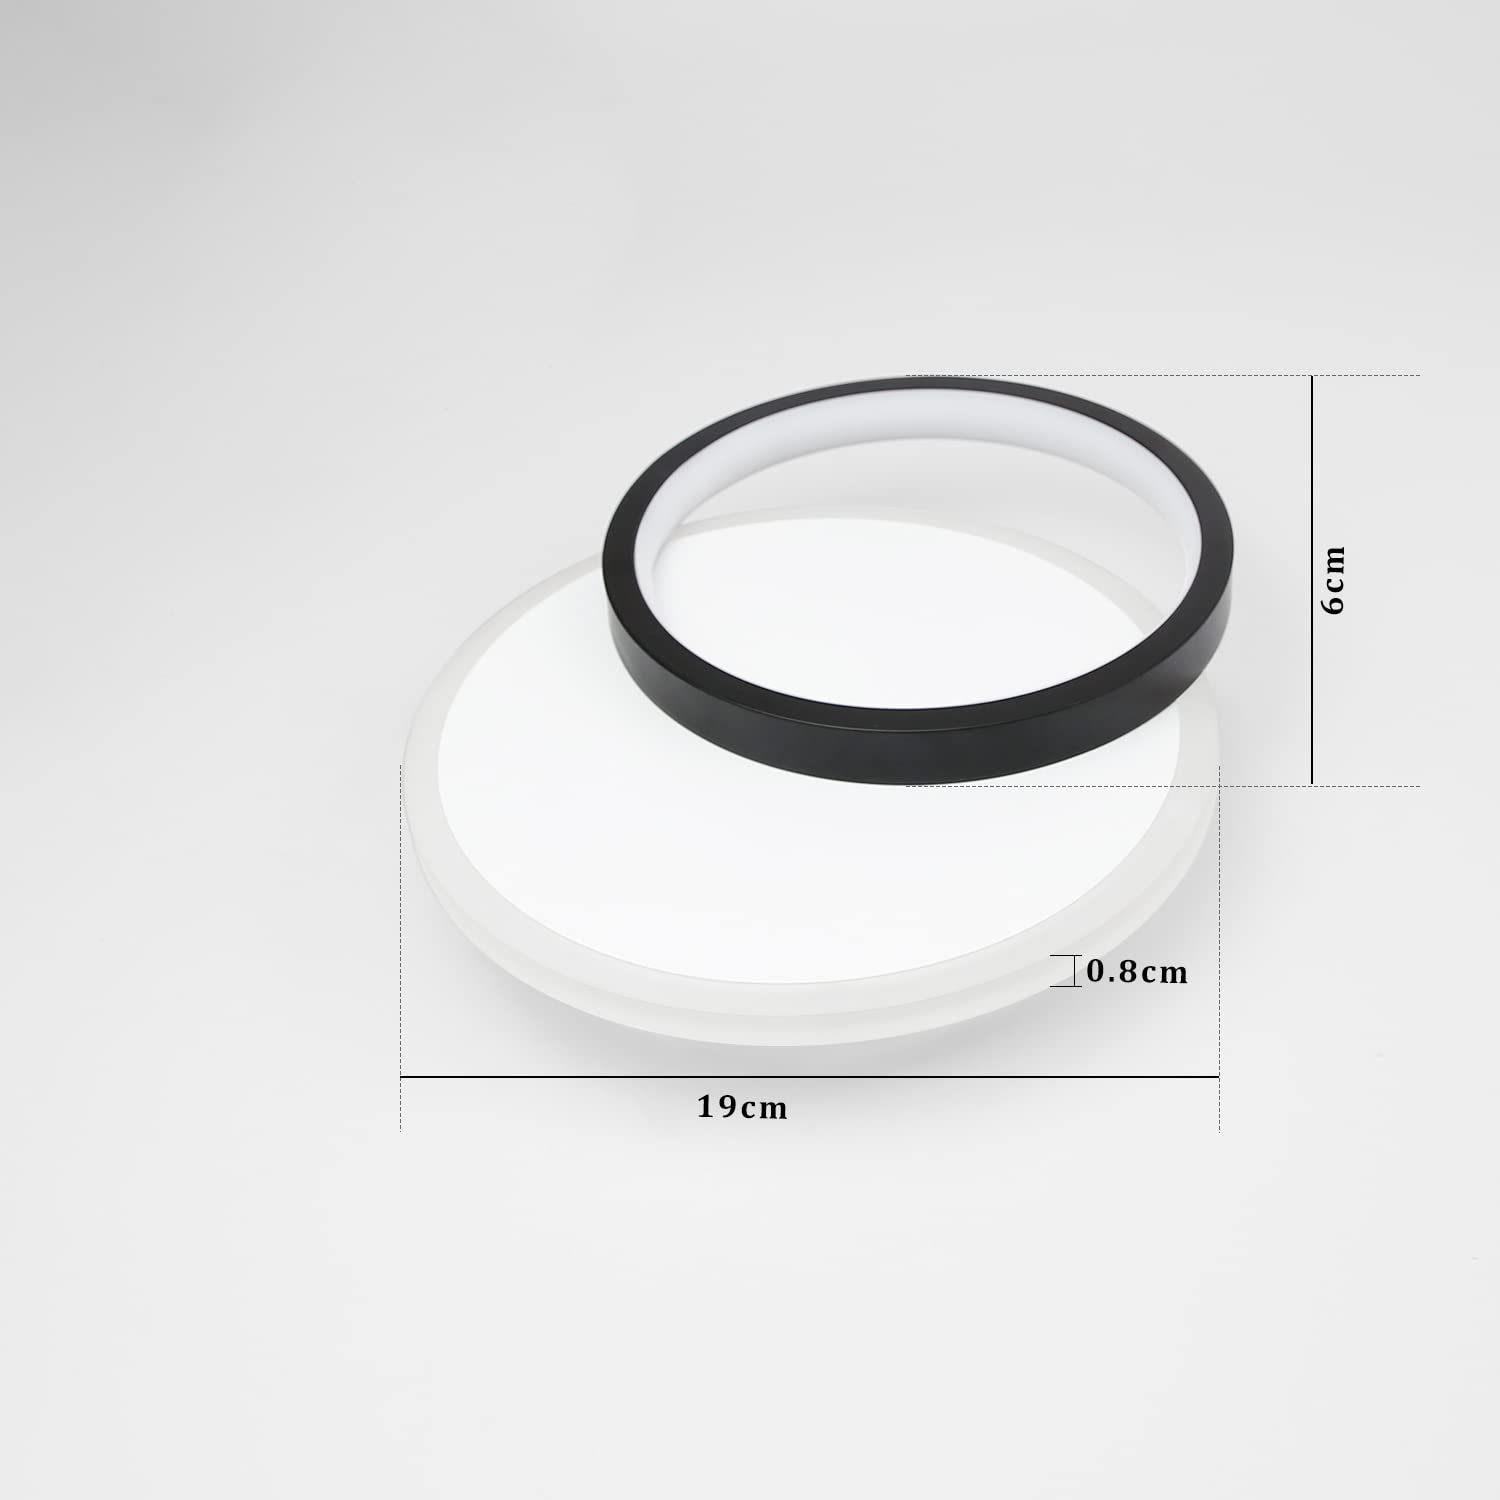 Acryl Modern LED Deckenleuchte LED Ringe, fest 12W Schwarz Warmweiß, integriert, Weiß Wohnzimmerlampe, ZMH Design 2